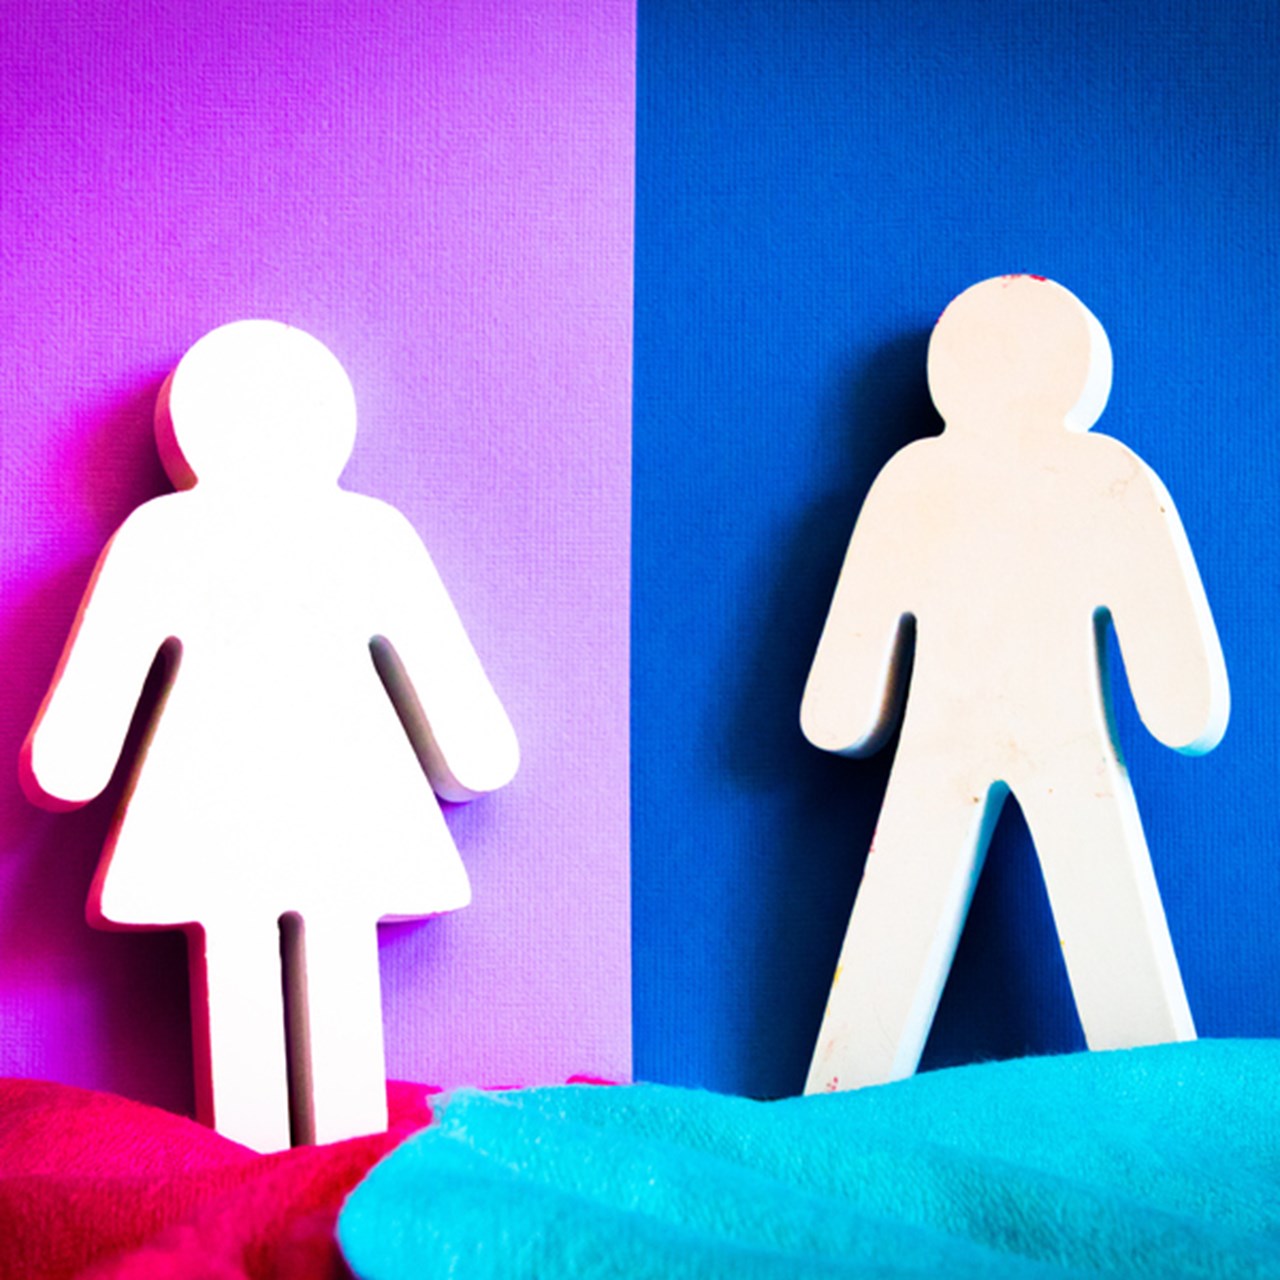 Stiliserade symboler för man och kvinna med rosa respektive blå bakgrund